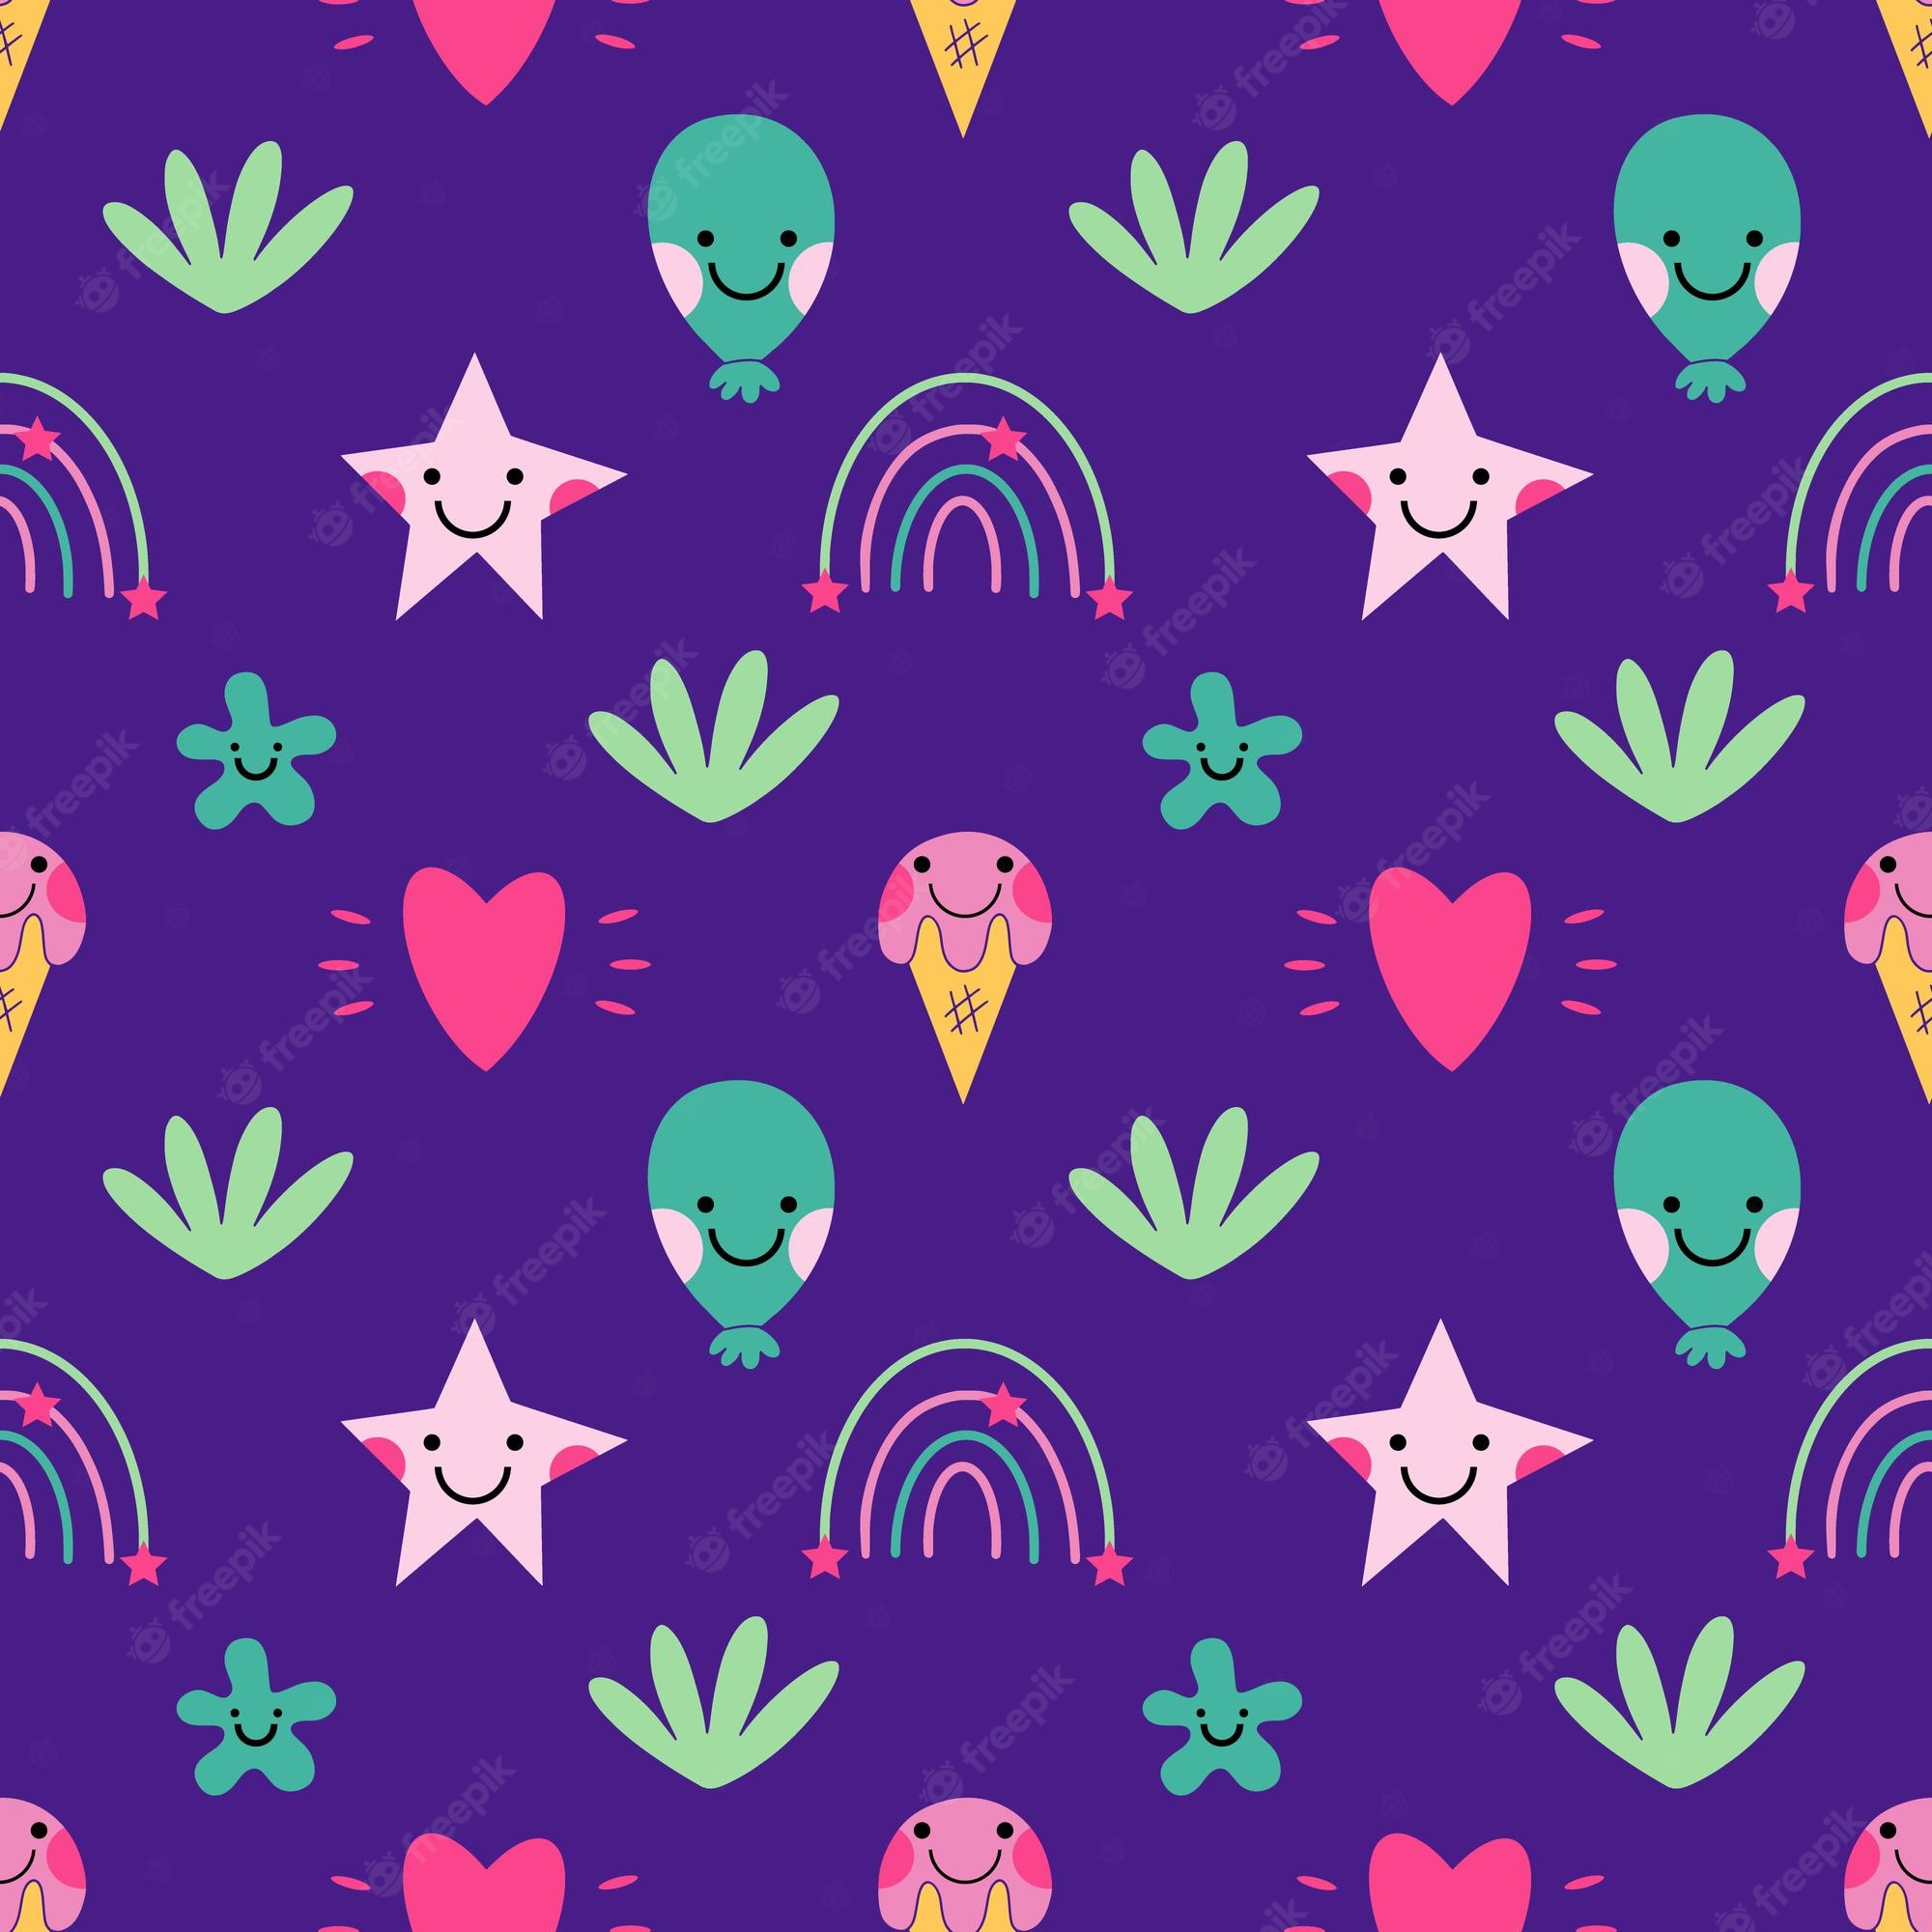 Alien Vaporwave Wallpapers